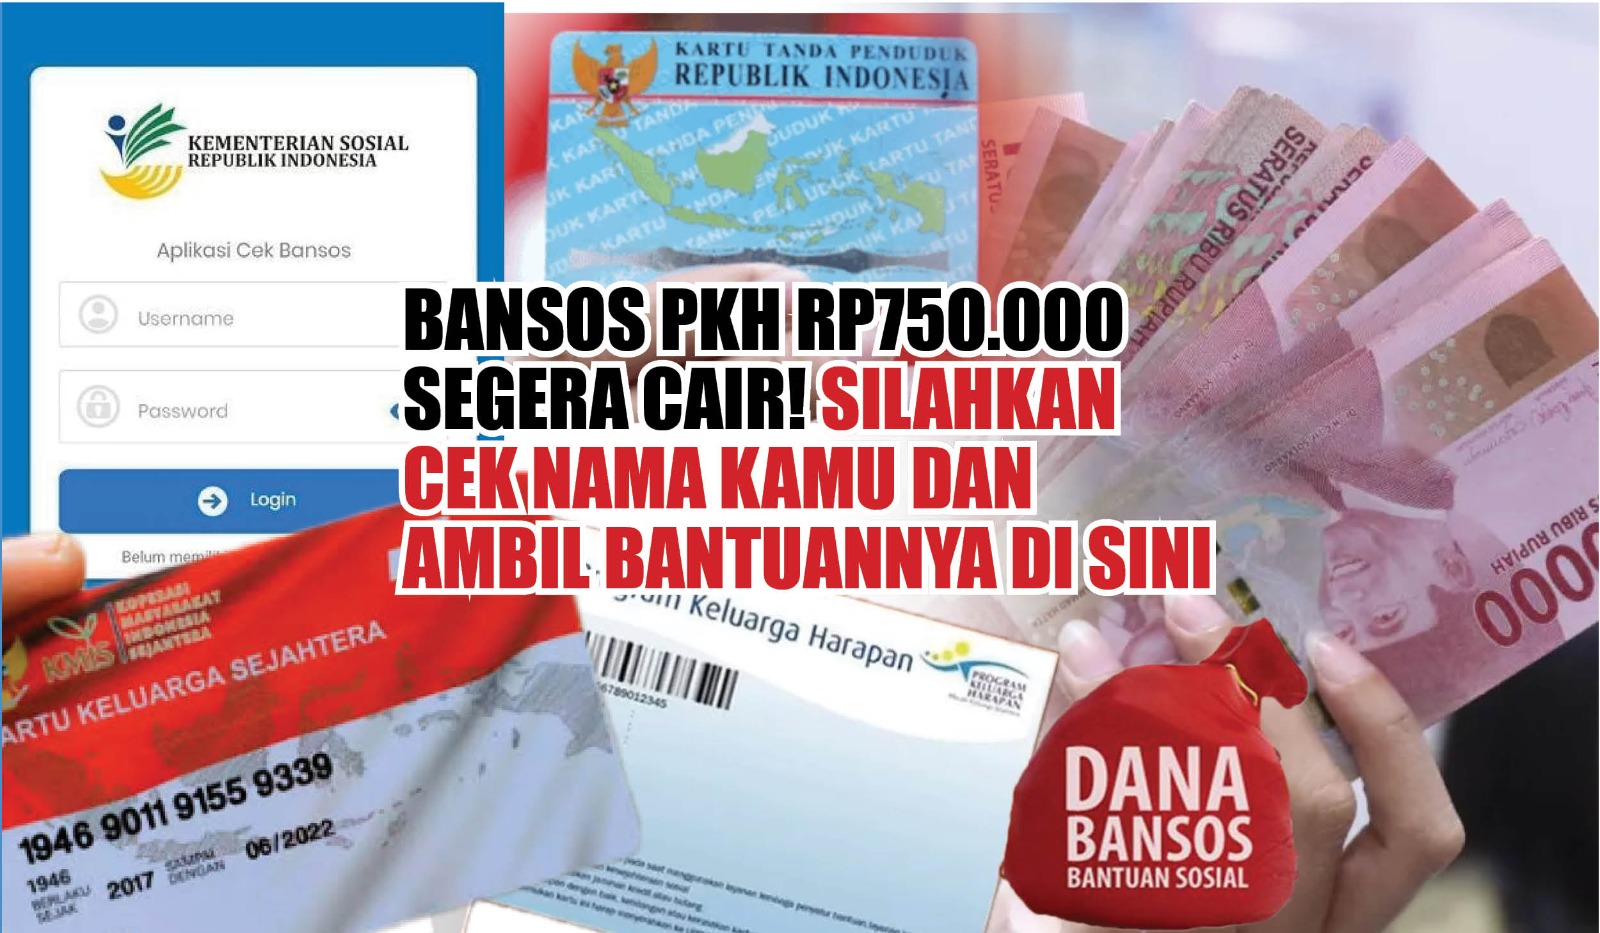 Bansos PKH Rp750.000 Segera Cair! Silahkan Cek Nama Kamu dan Ambil Bantuannya di Sini